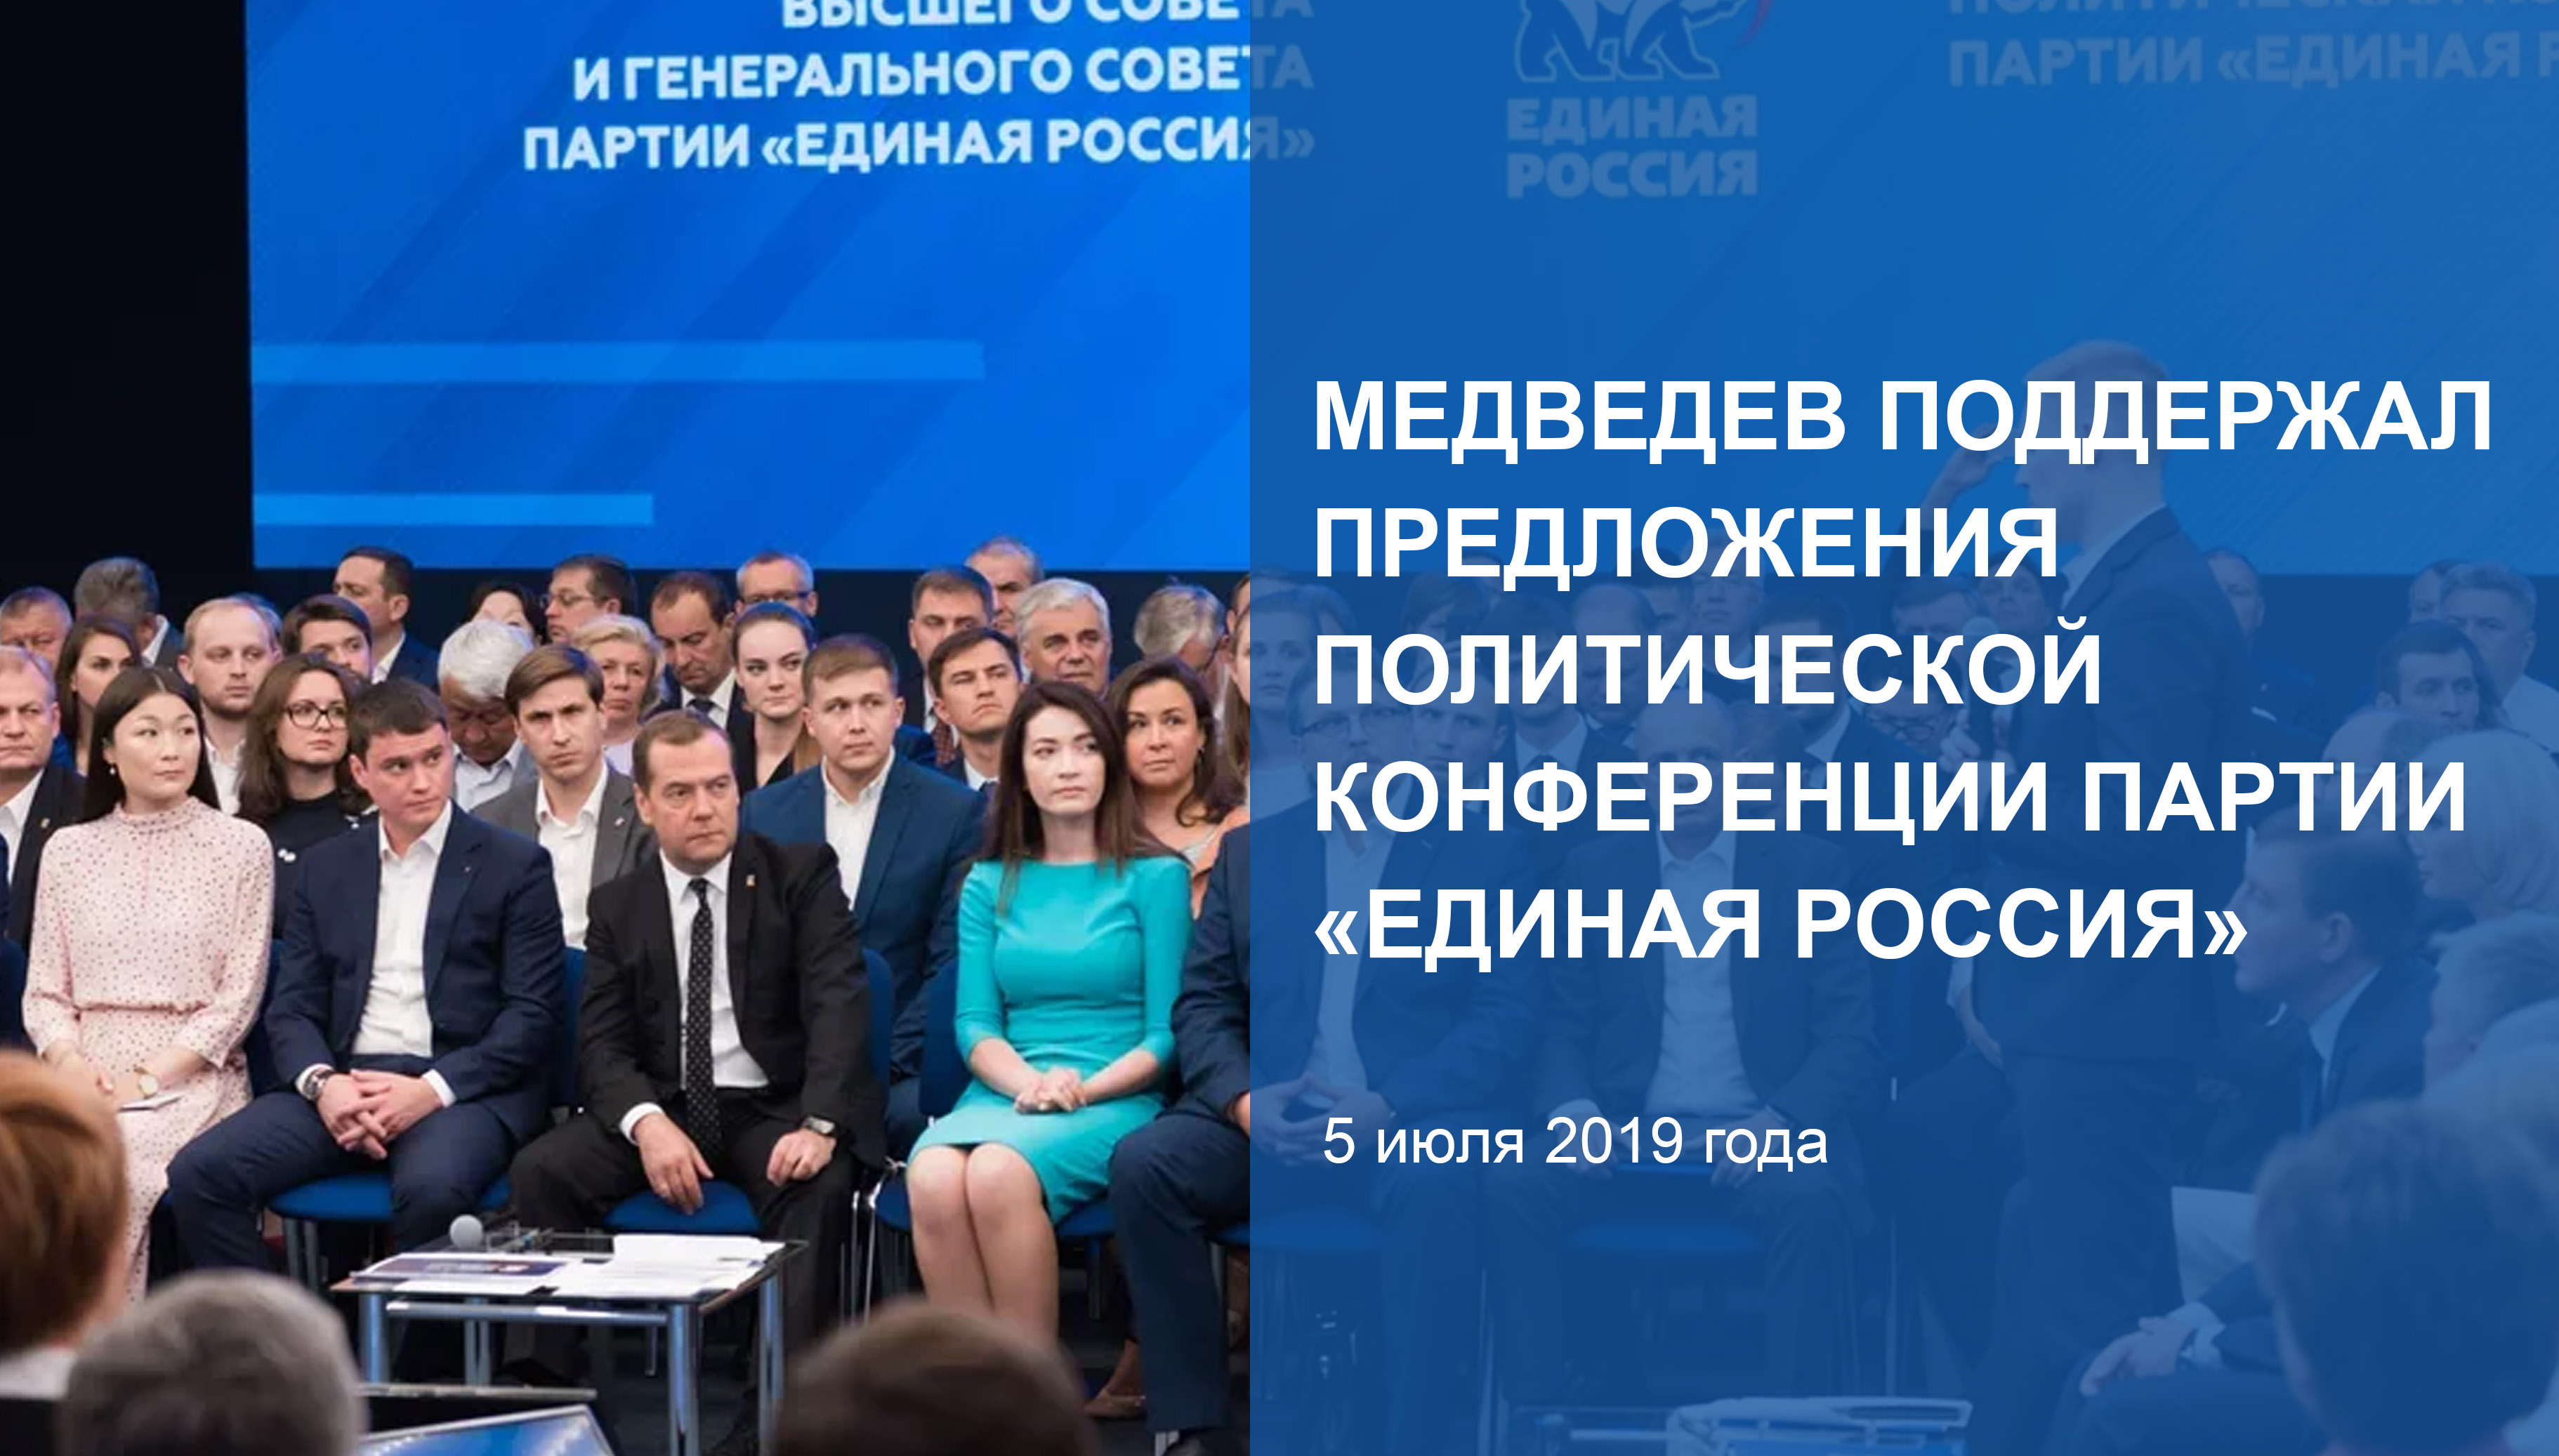 Медведев поддержал предложения
политической конференции Партии